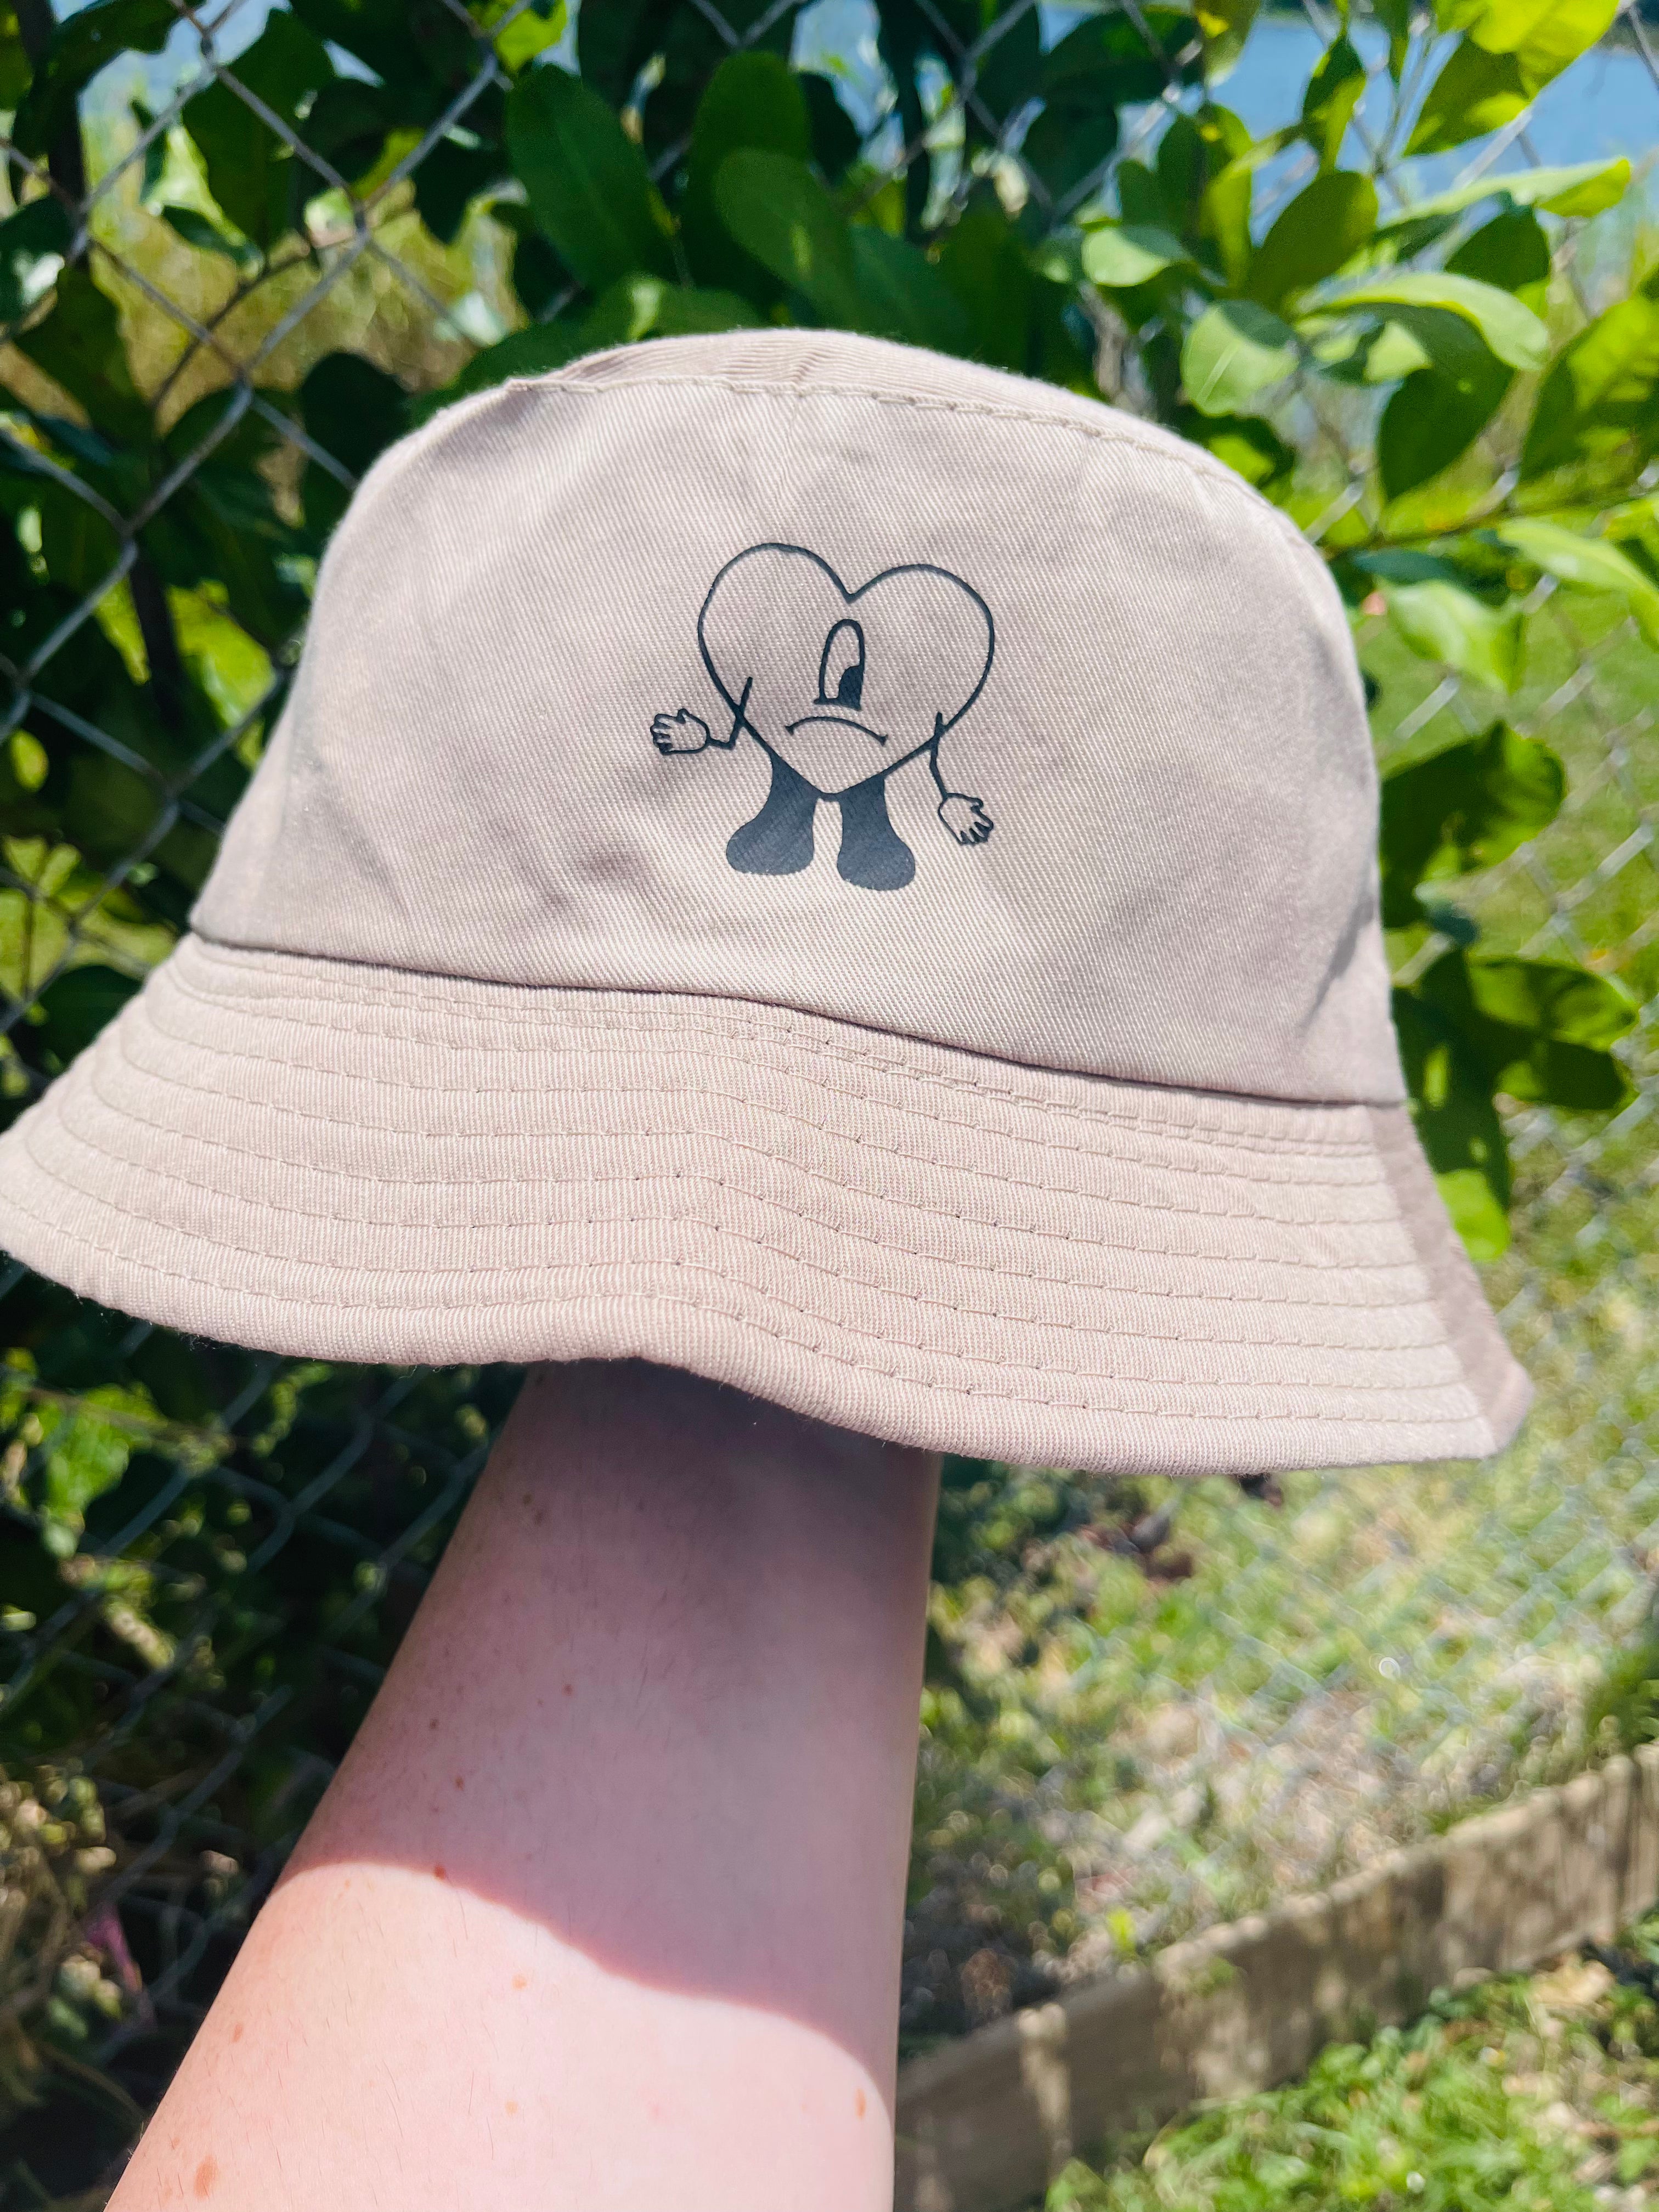 Bad Bunny Pokémon Hat By Slumpykev 7 5/8 for Sale in Lucas, TX - OfferUp